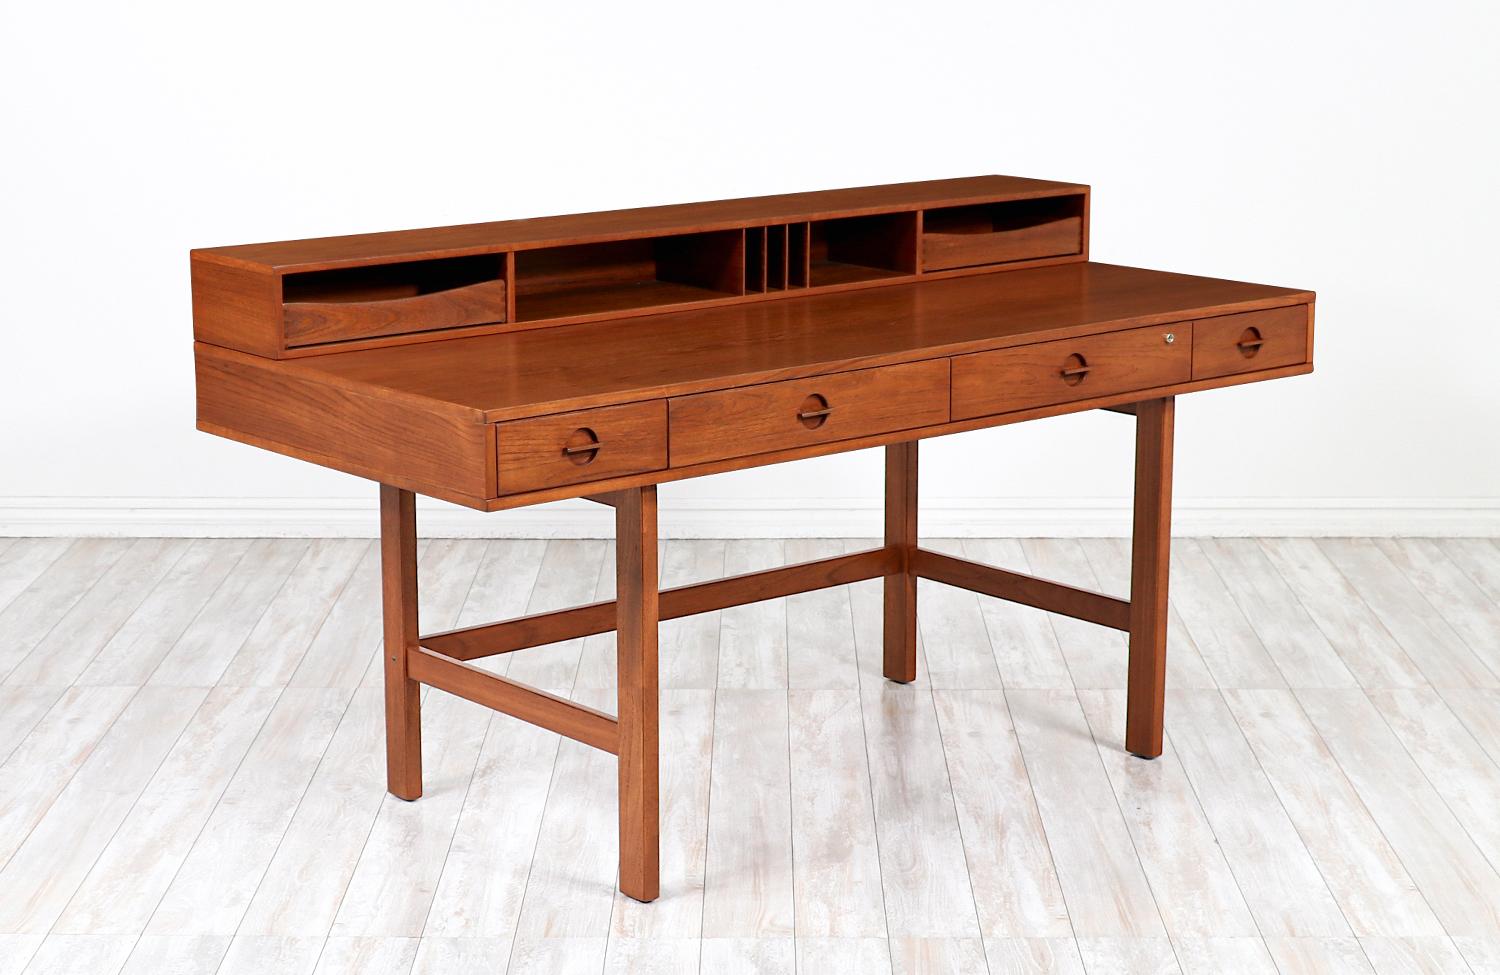 Spektakulärer Schreibtisch aus Teakholz, entworfen und gefertigt von Peter Løvig Nielsen in Dänemark um 1970. Durch sein ausgeklügeltes Design ist er vielseitig einsetzbar, denn durch einfaches Umklappen der oberen Ablage und der oberen